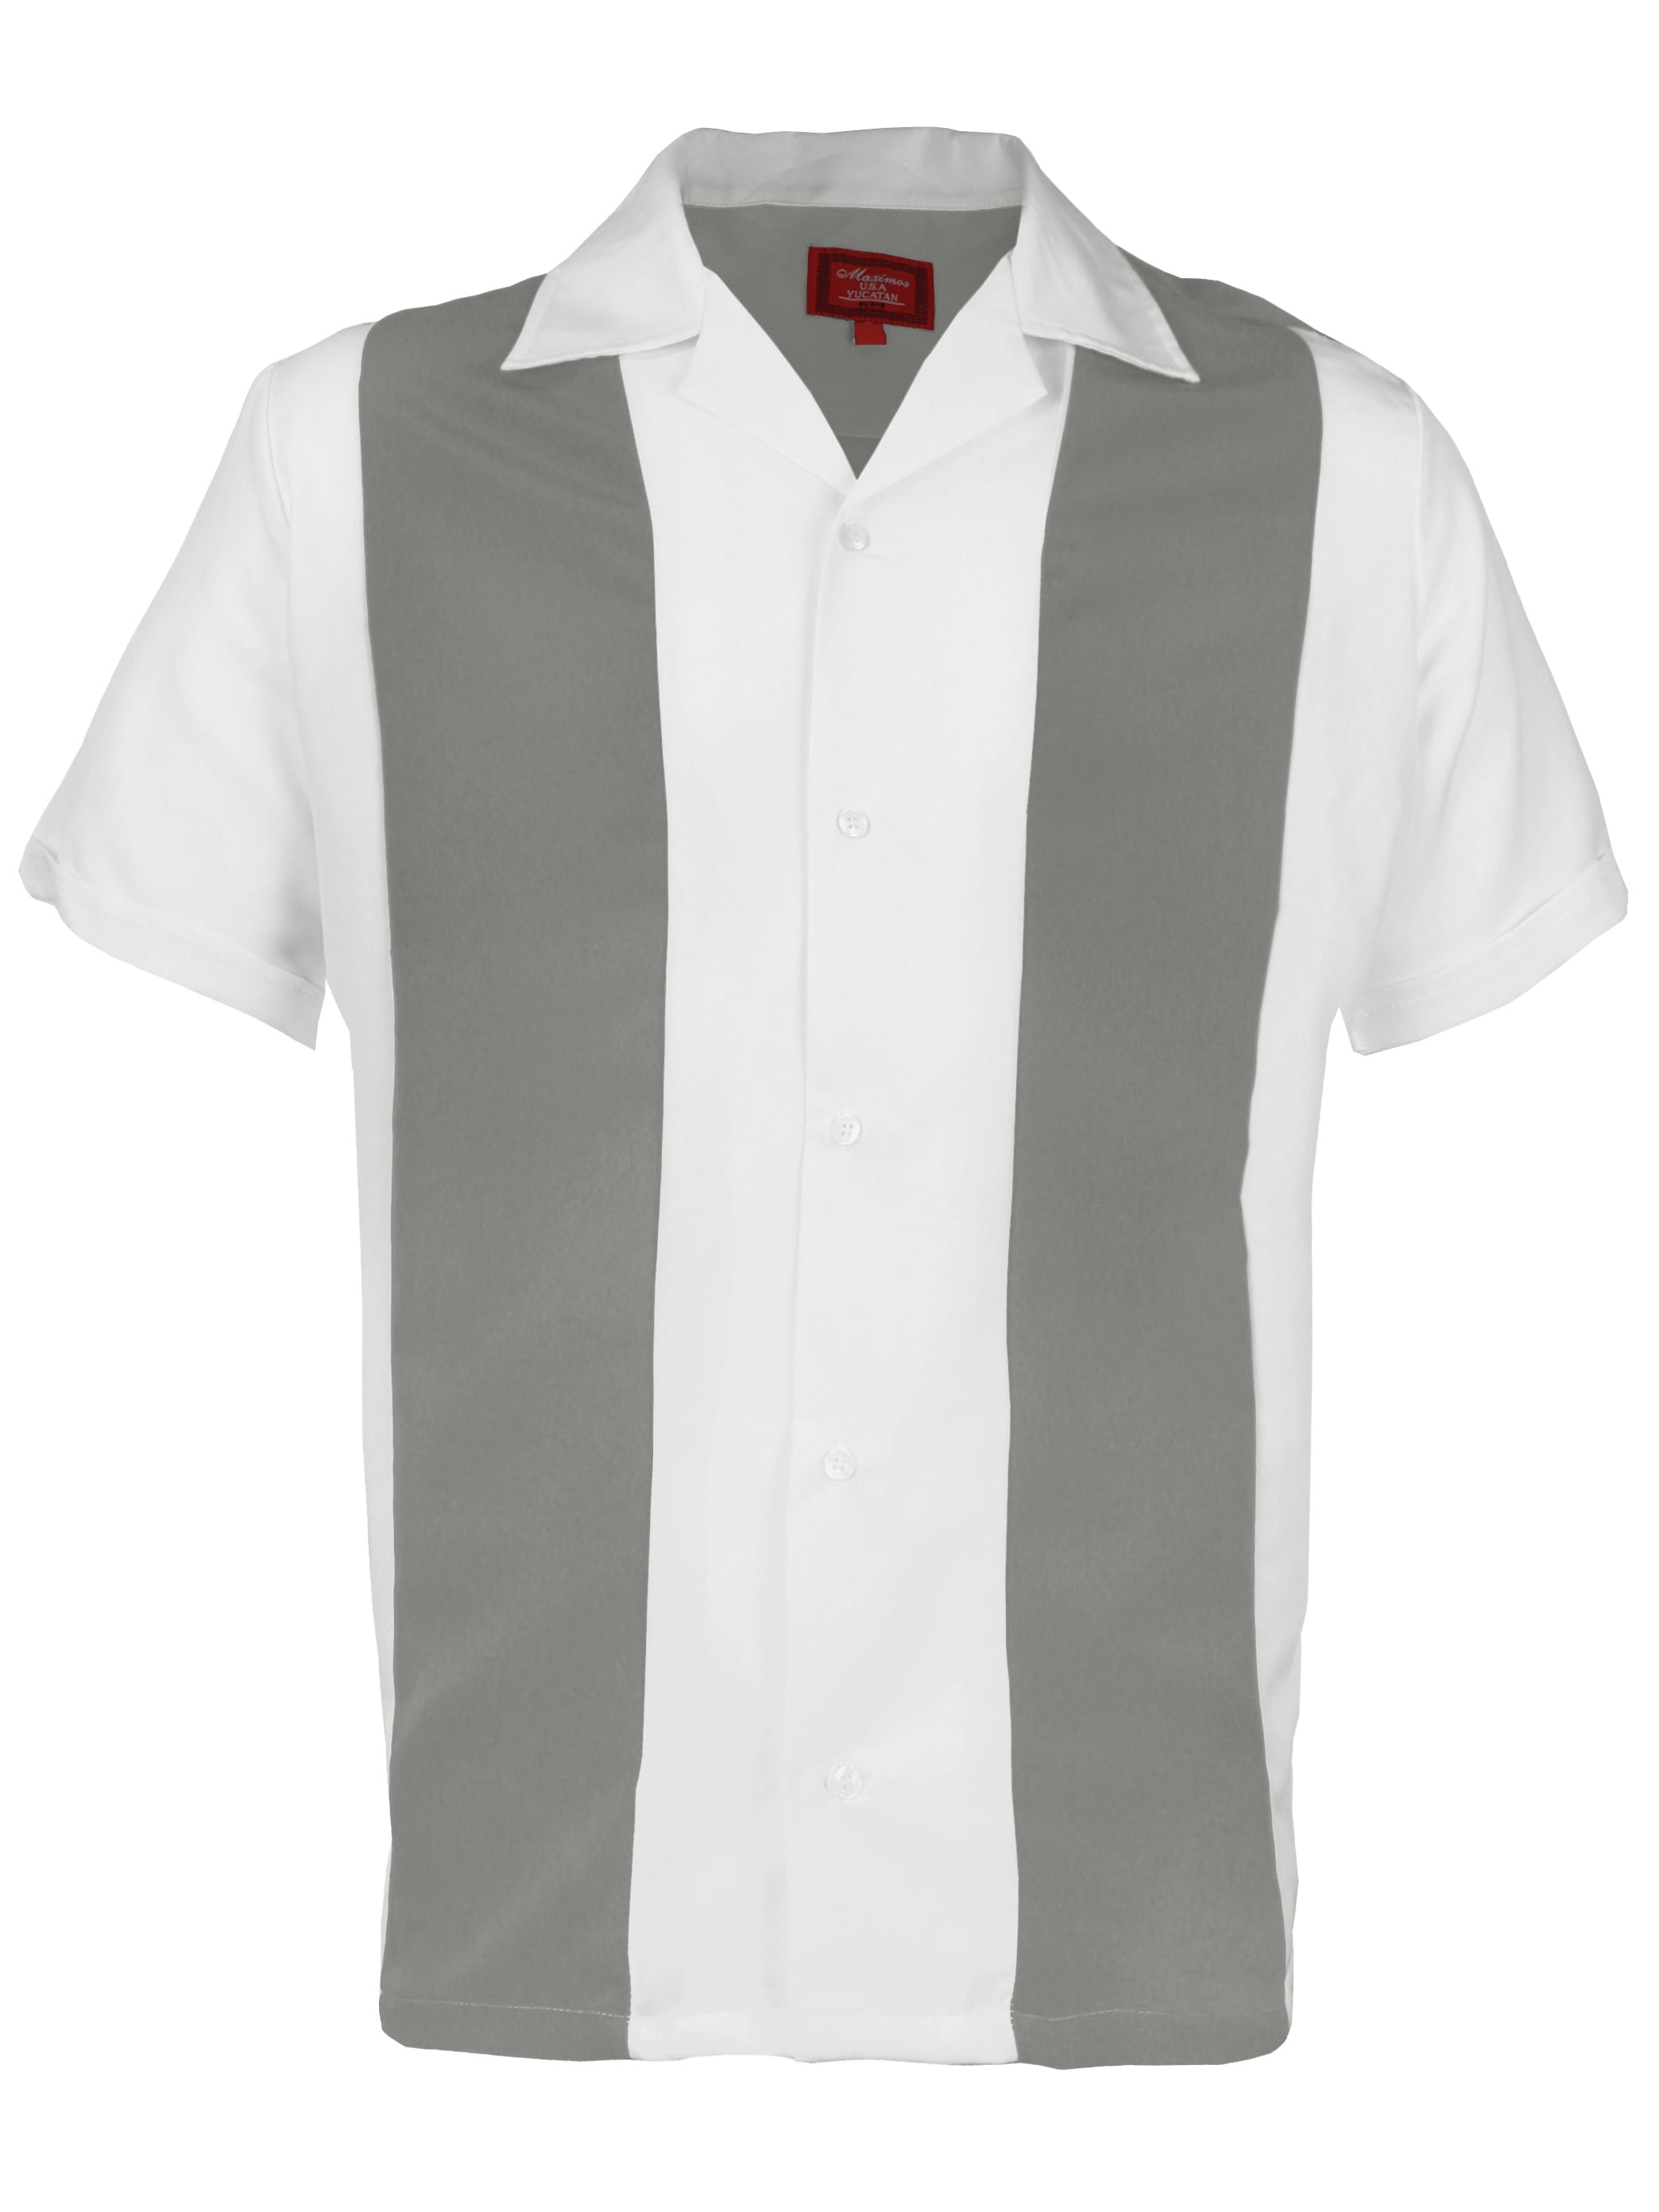 Mens Retro Classic Charlie Sheen Two Tone Guayabera Bowling Casual Dress Shirt